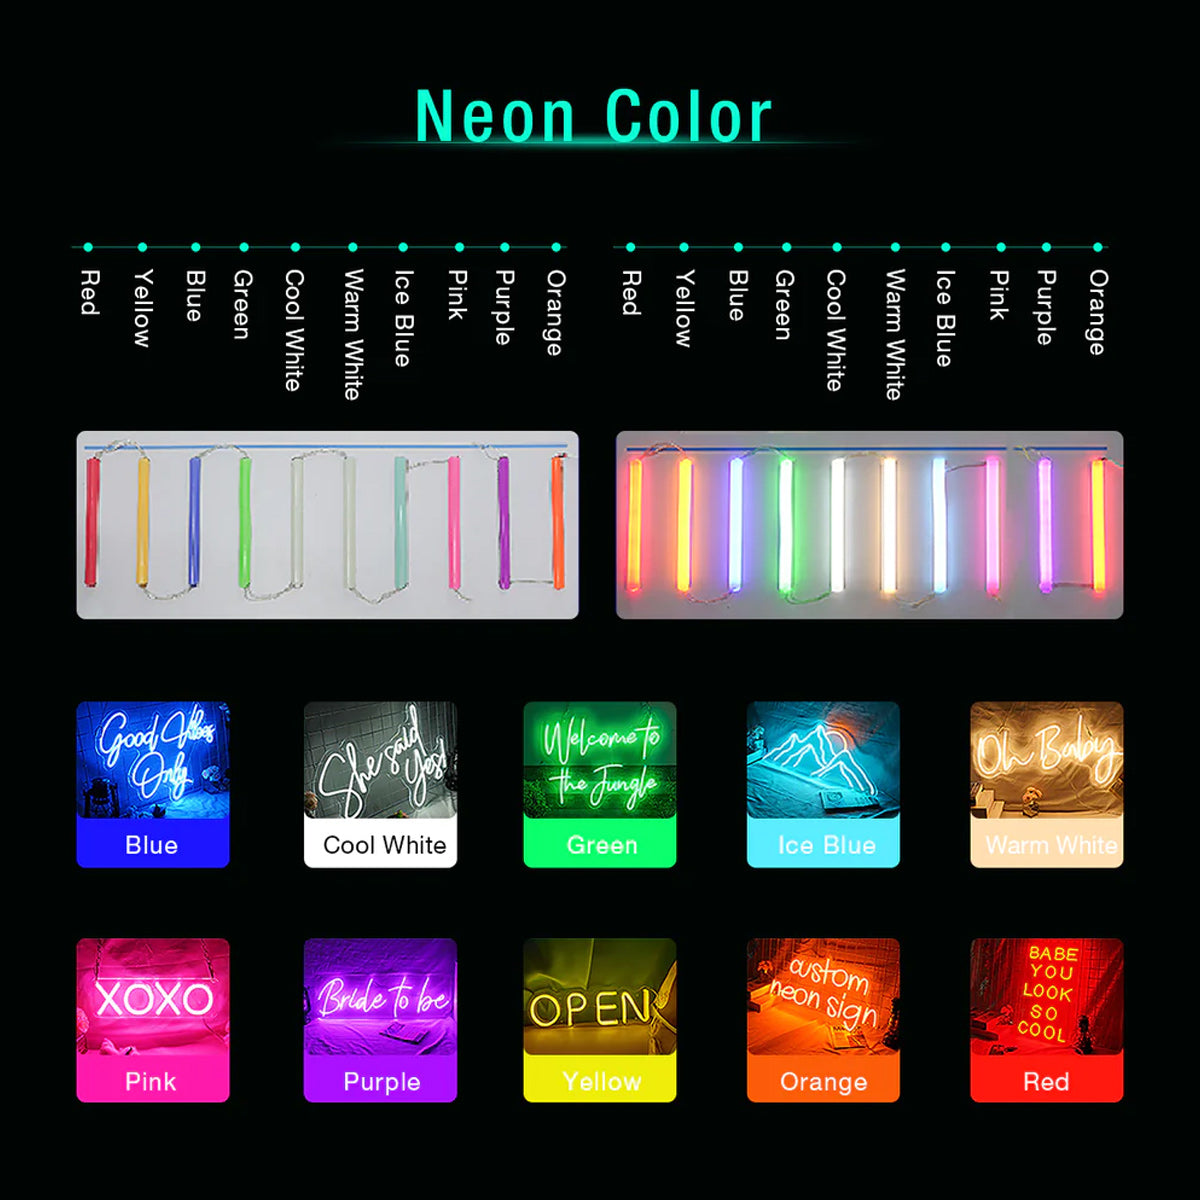 NEONIP-100% Handmade Cat Mirror Neon Light for Girls Bedroom